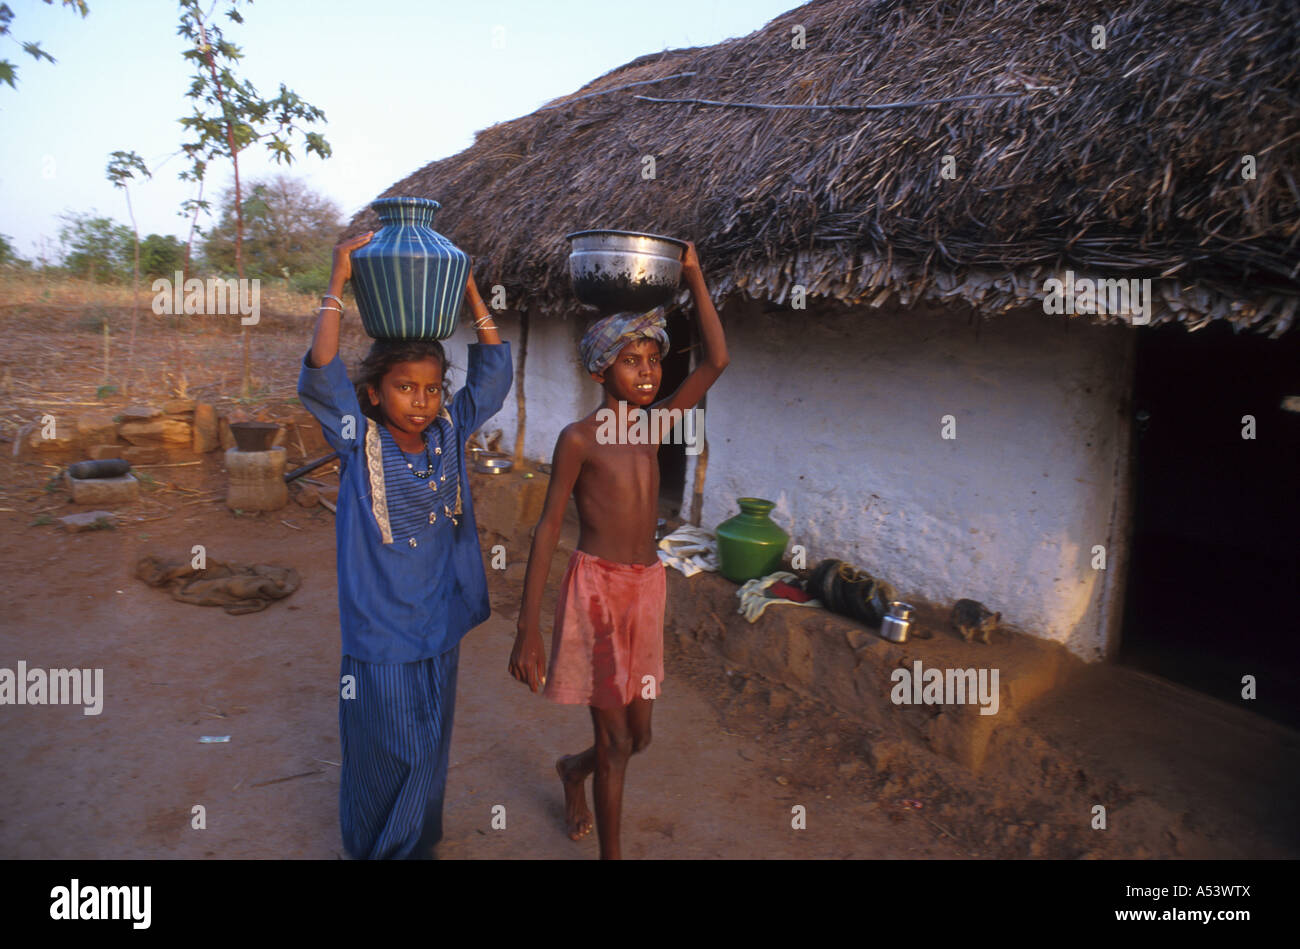 Painet ha2232 5018 inde travail des enfants portant de l'eau au pays en développement Pays développés économiquement émergentes de la culture Banque D'Images